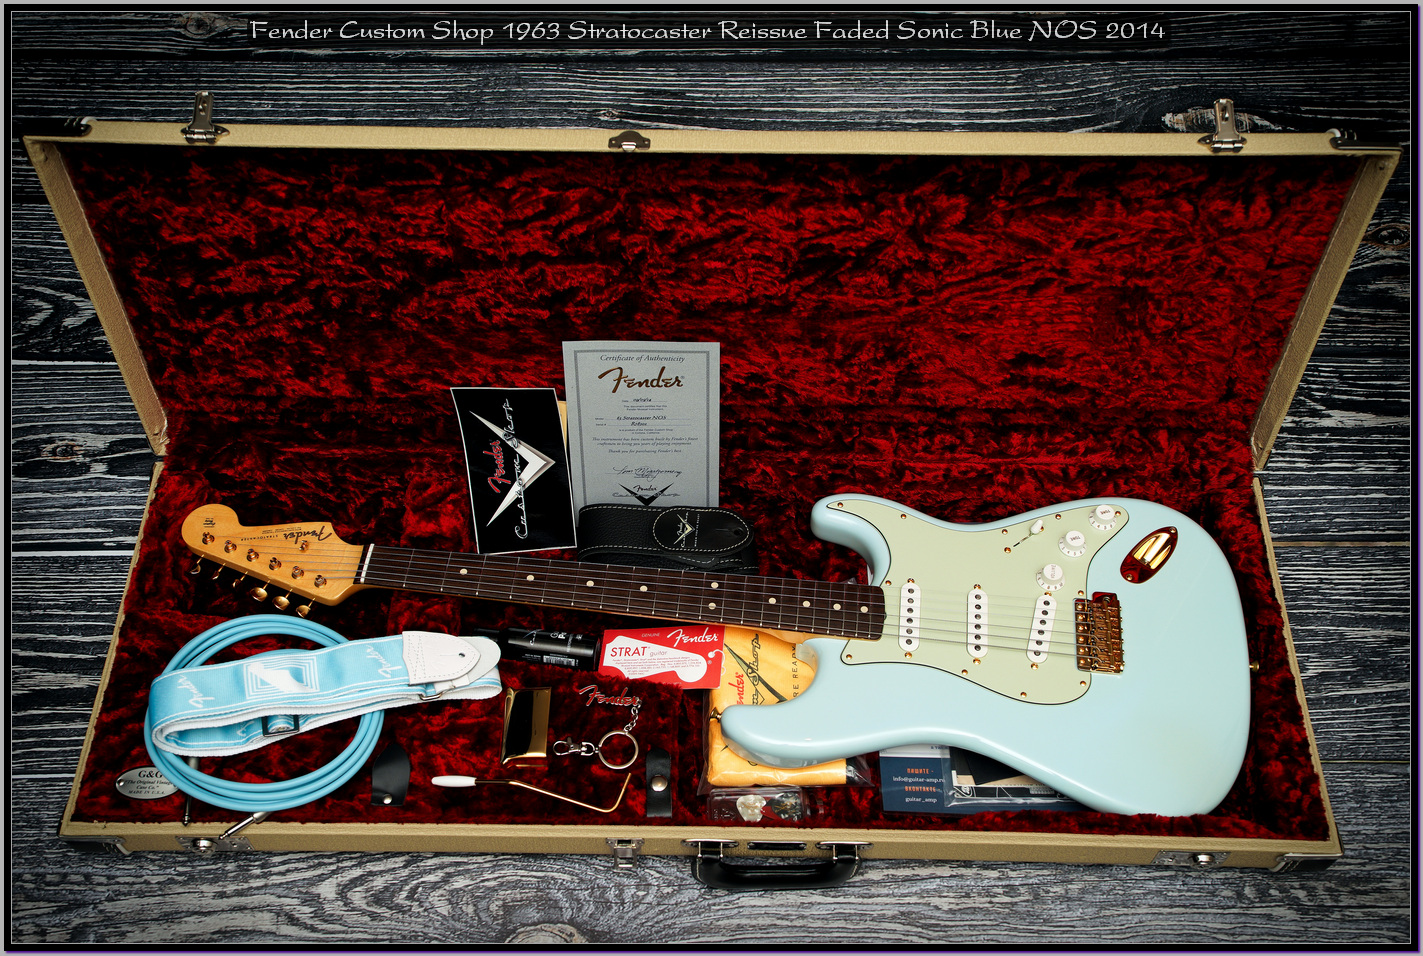 Fender Custom Shop 1963 Stratocaster Reissue Faded Sonic Blue NOS 2014 09_x1400.jpg